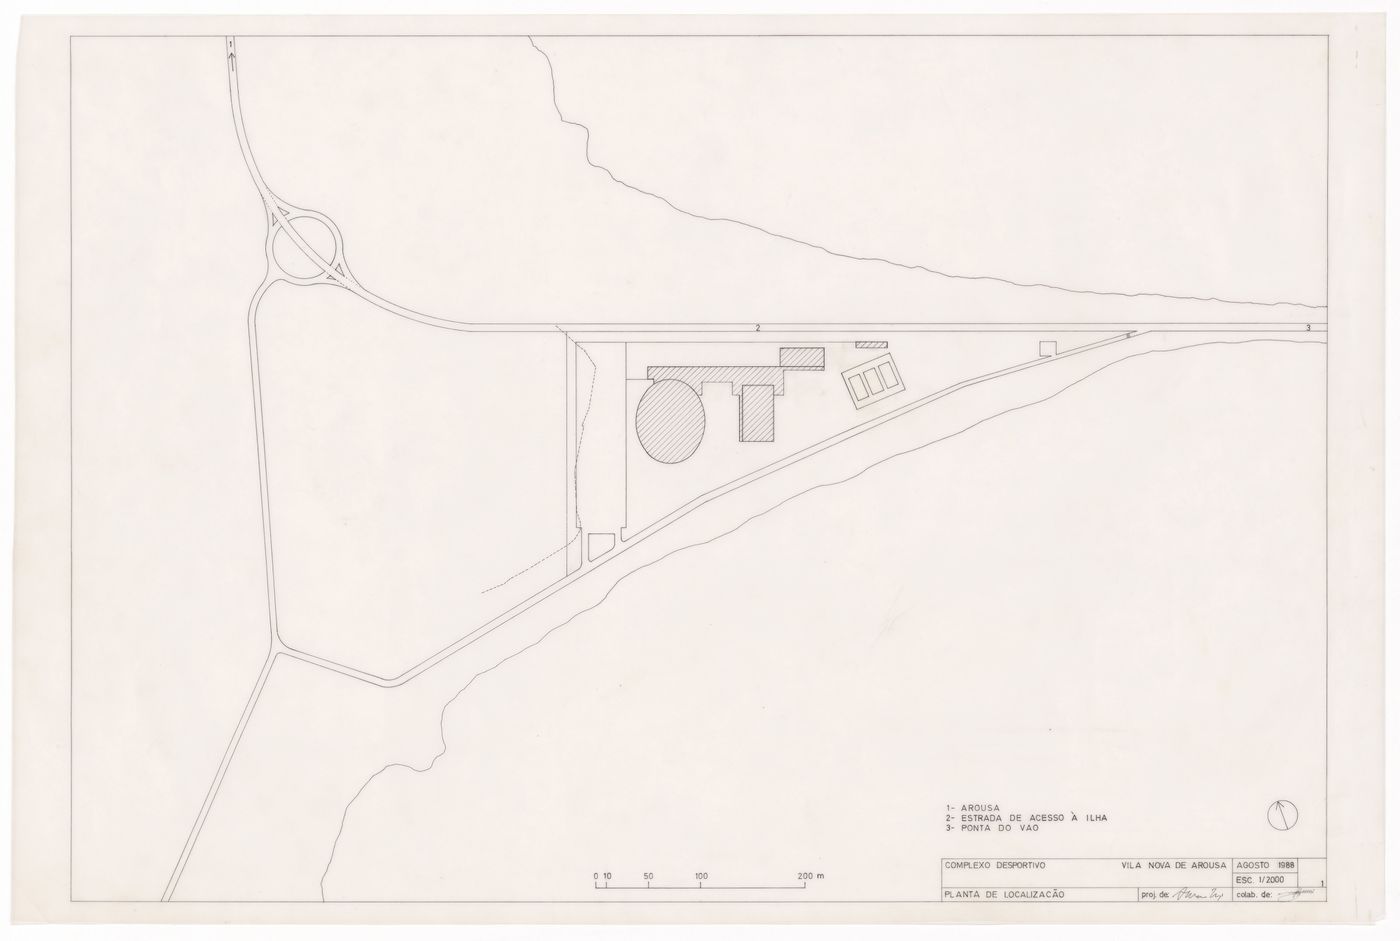 Site plan for Complexo Desportivo de Vilanova de Arousa, Vilanova de Arousa